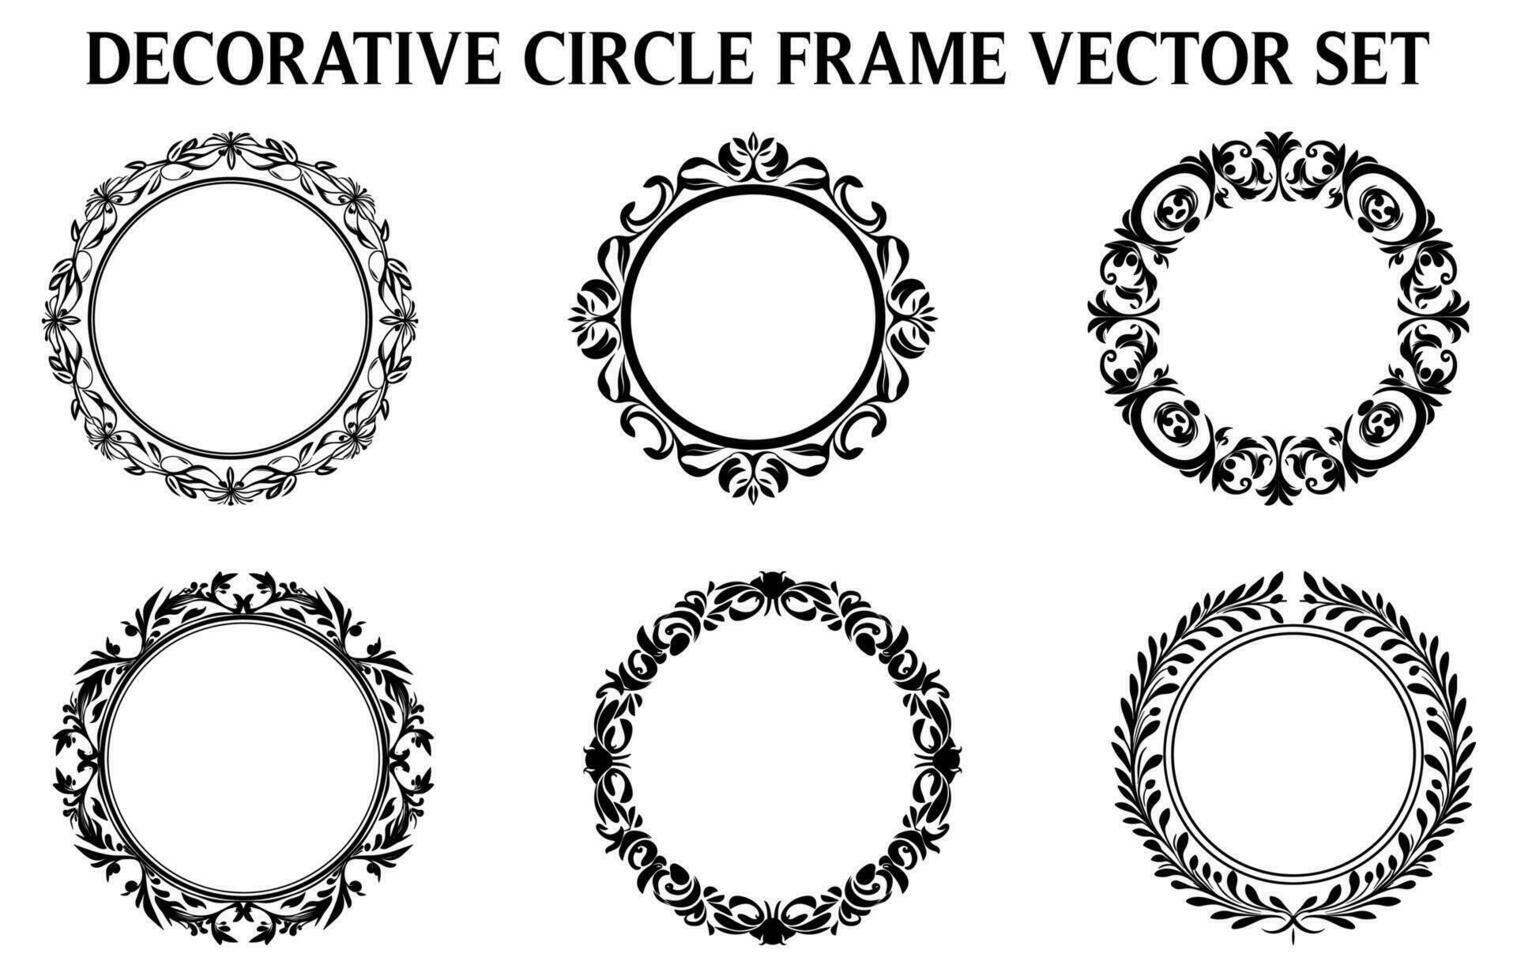 Jahrgang dekorativ Zier Kreis Rahmen Vektor Satz, runden Vektor Zier Rahmen und Filigran Blumen- Ornamente